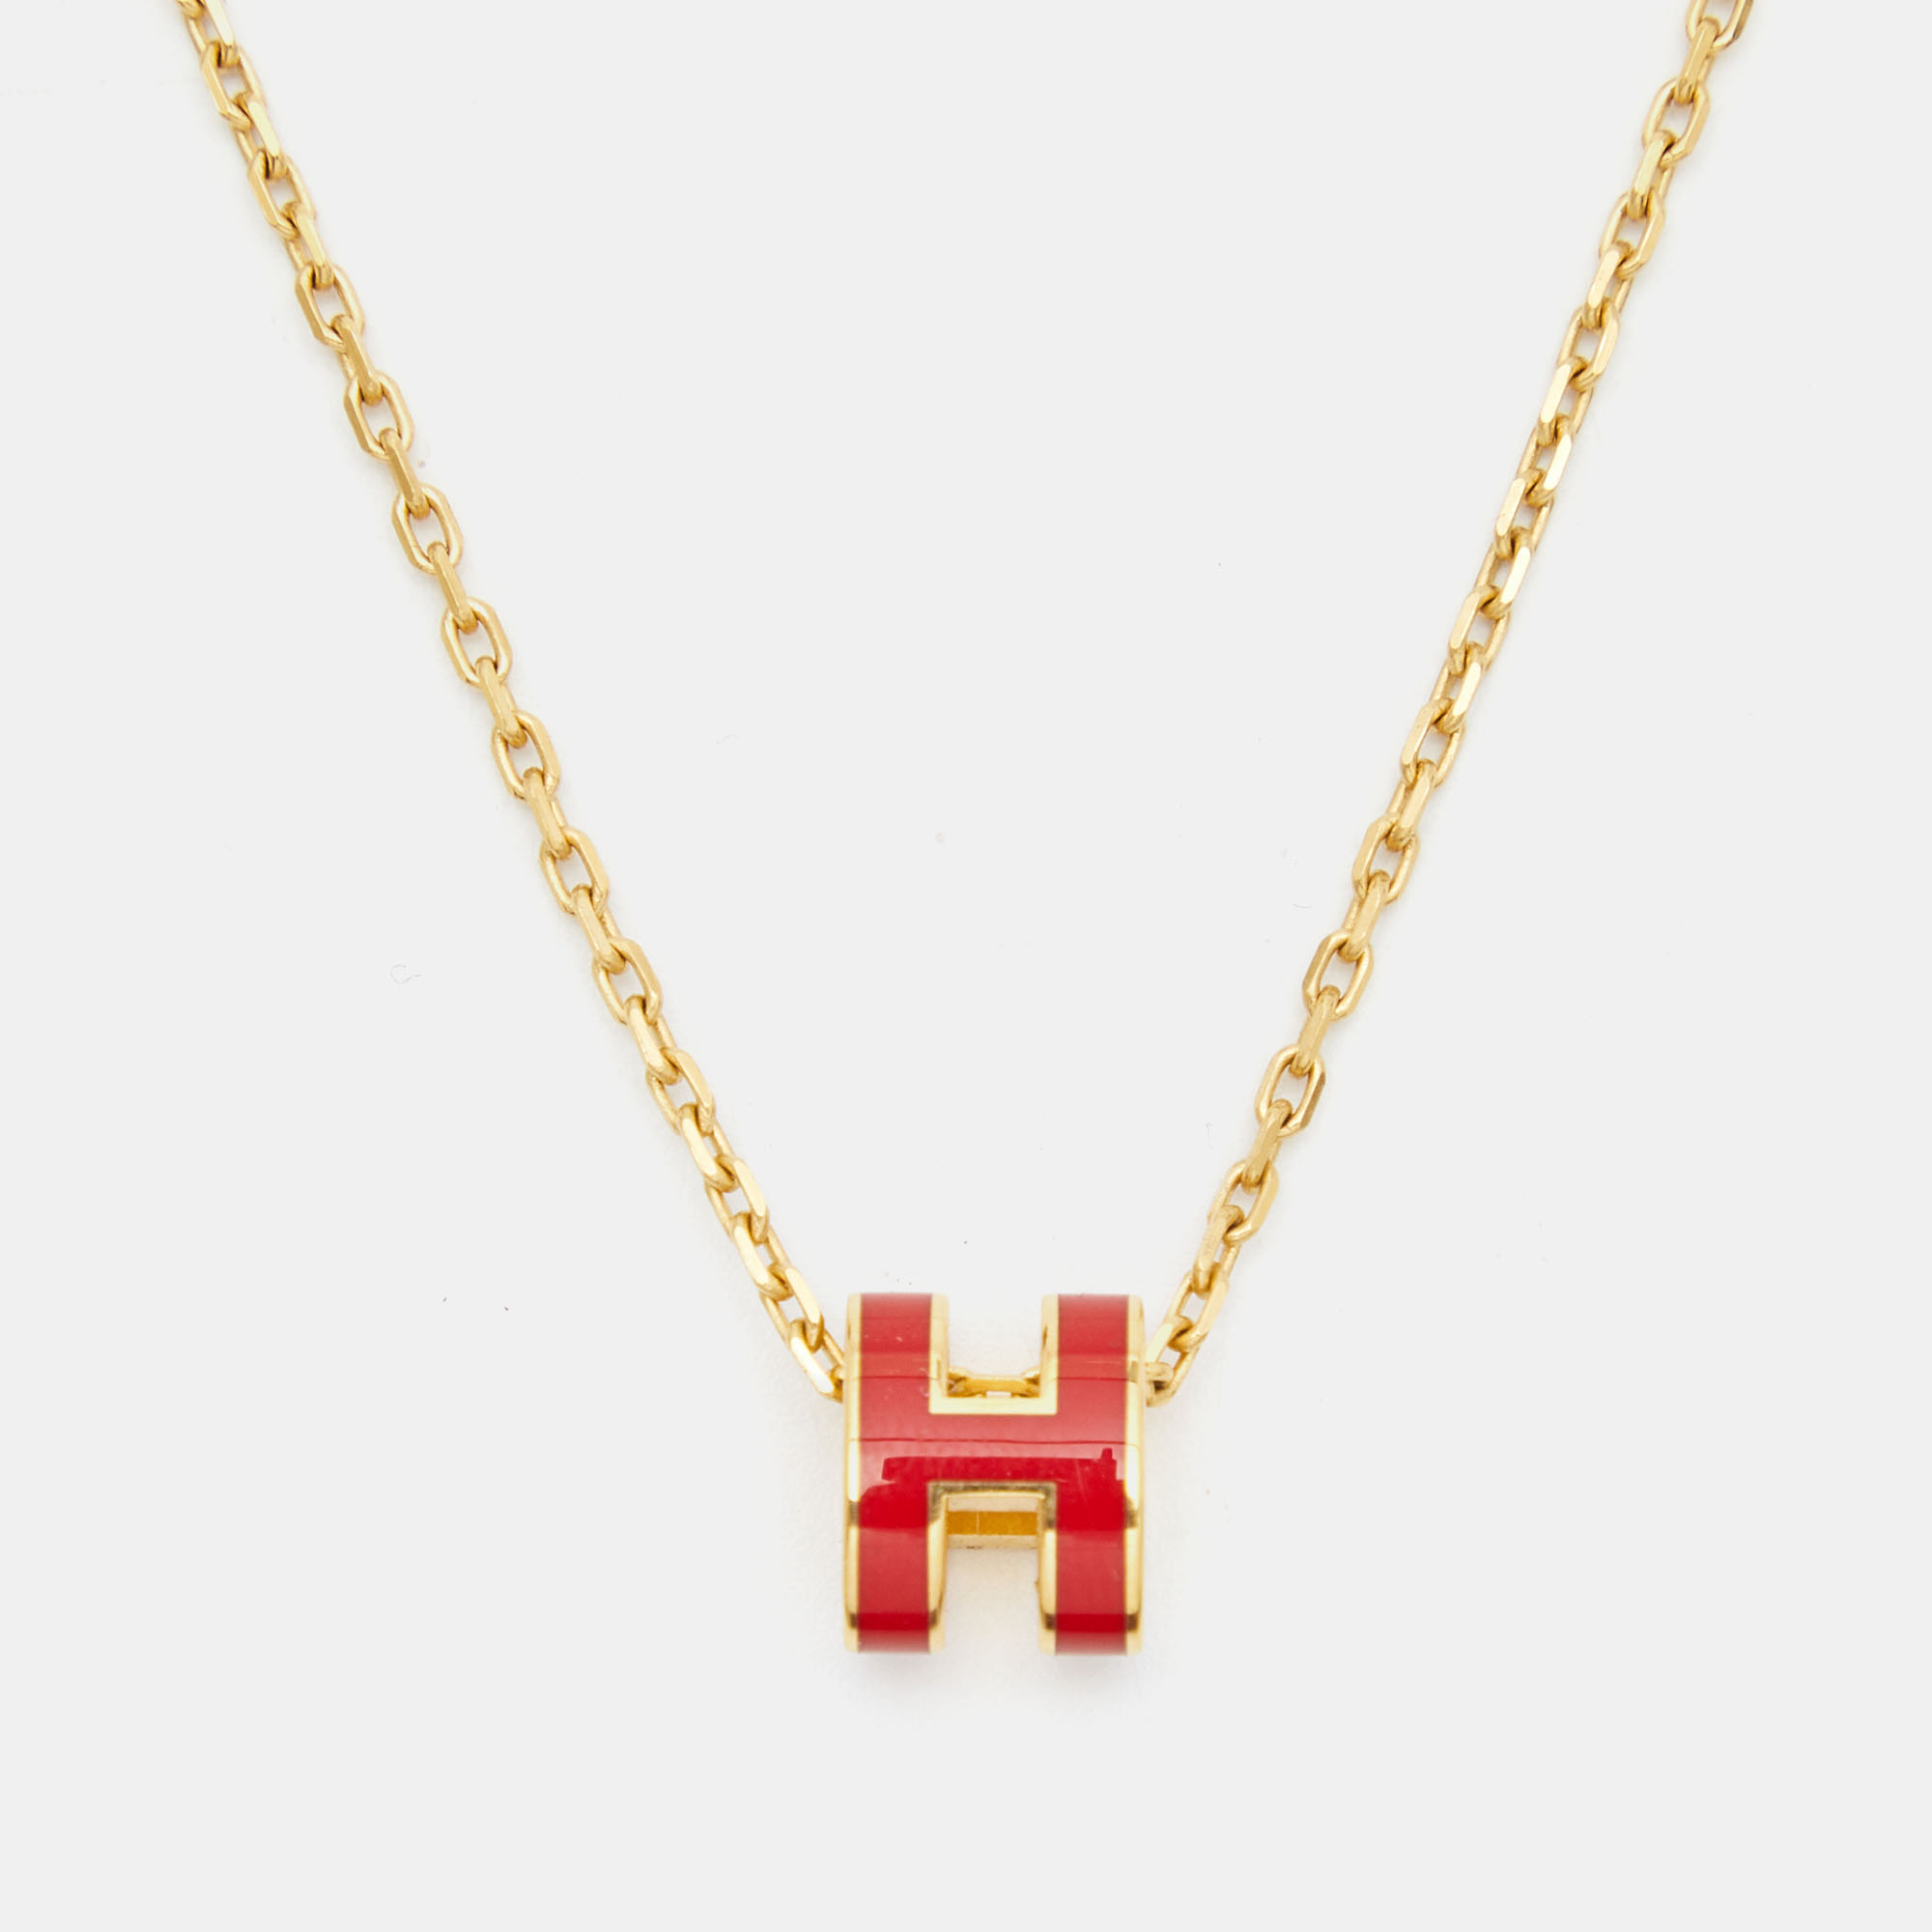 Hermès Mini Pop H Enamel Gold Plated Necklace